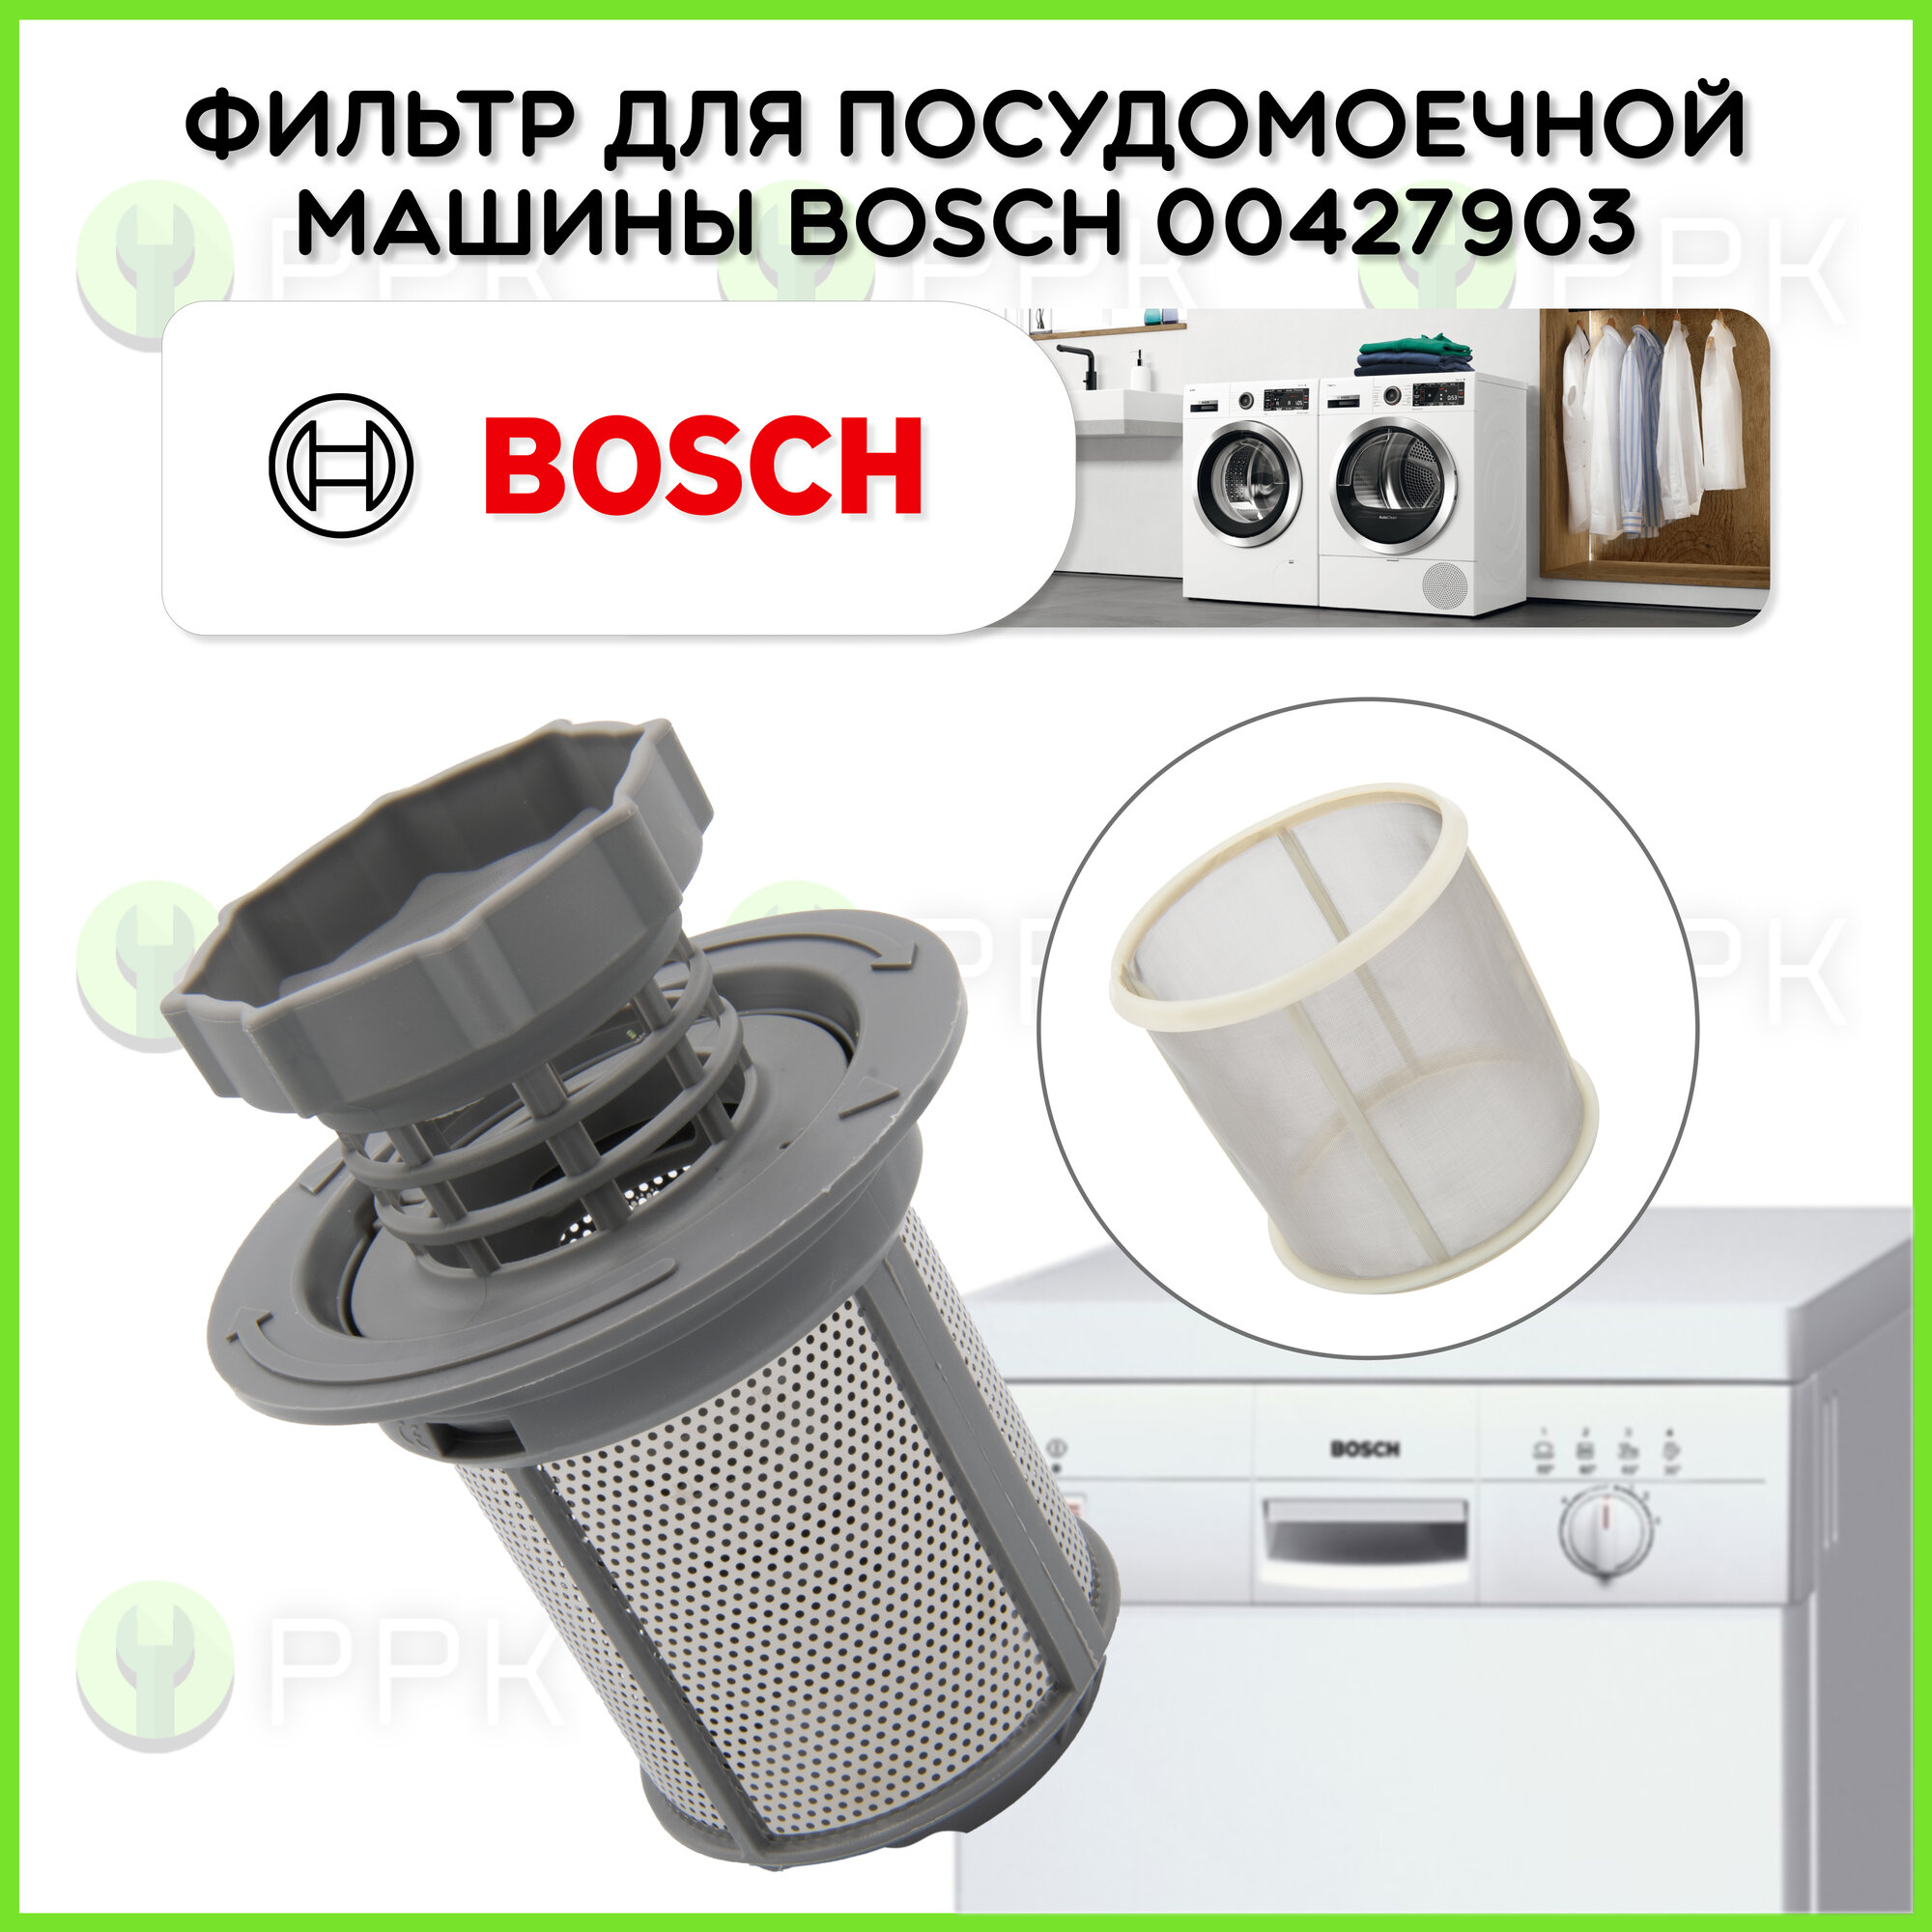 Фильтр для посудомоечной машины Bosch 00427903 10002494 00427903 00492046 00175712 00170740